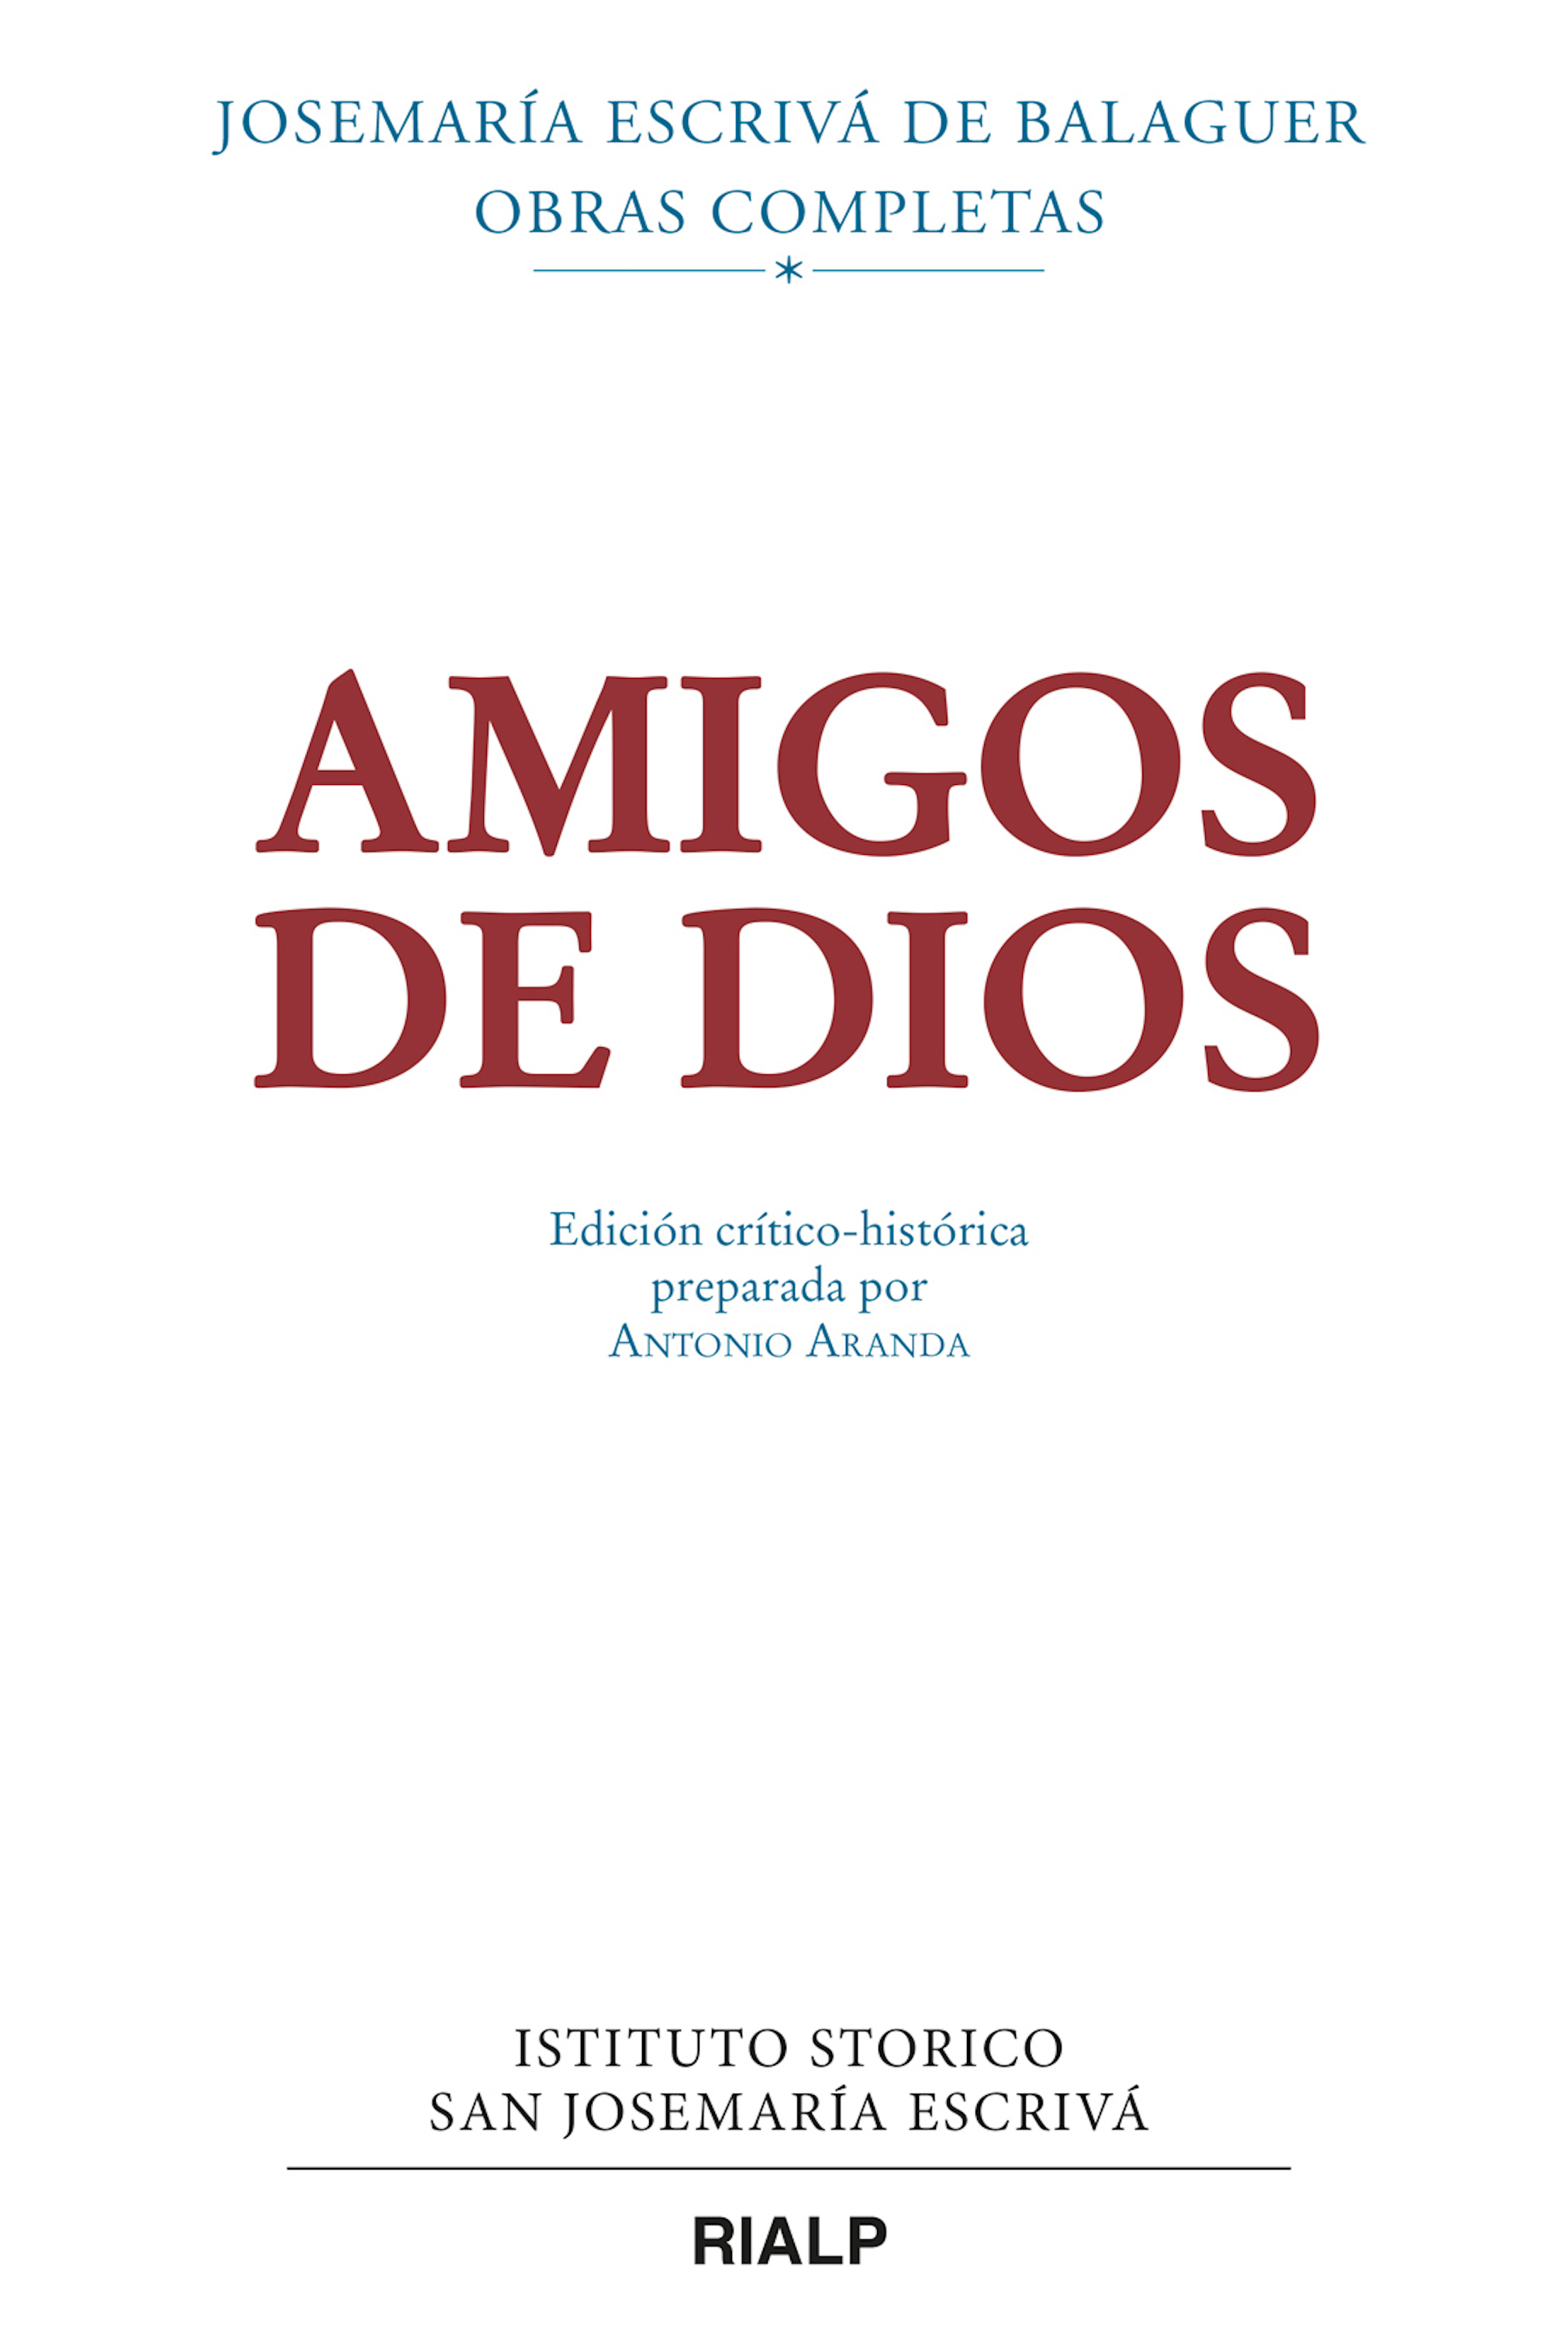 Josemaria Escriva de Balaguer Amigos de Dios (crítico-histórica)